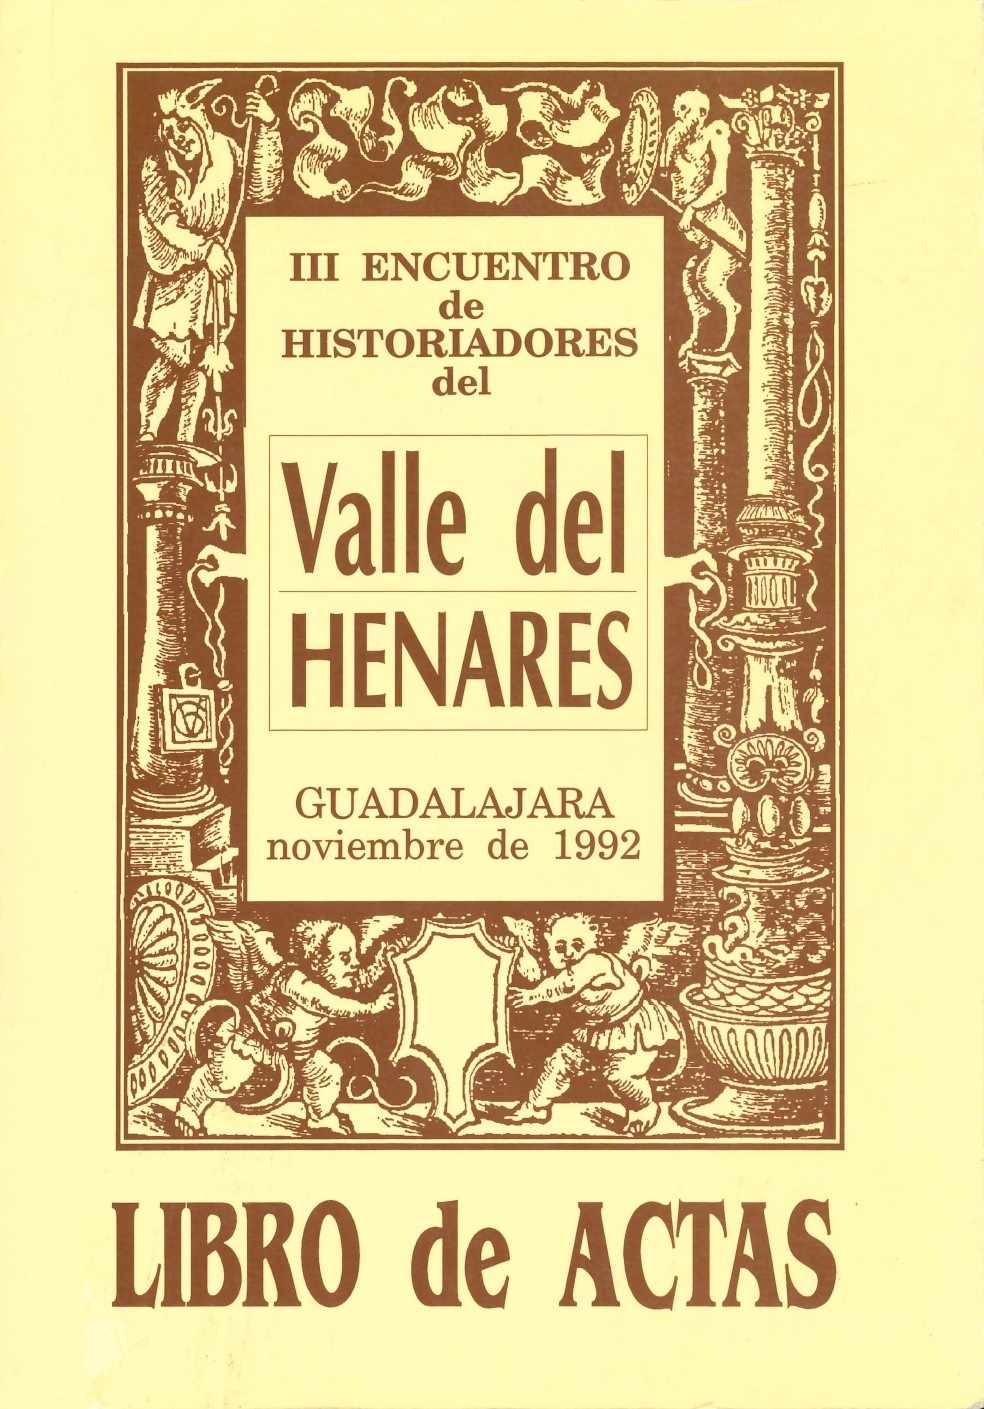 Imagen de portada del libro III Encuentro de Historiadores del Valle del Henares